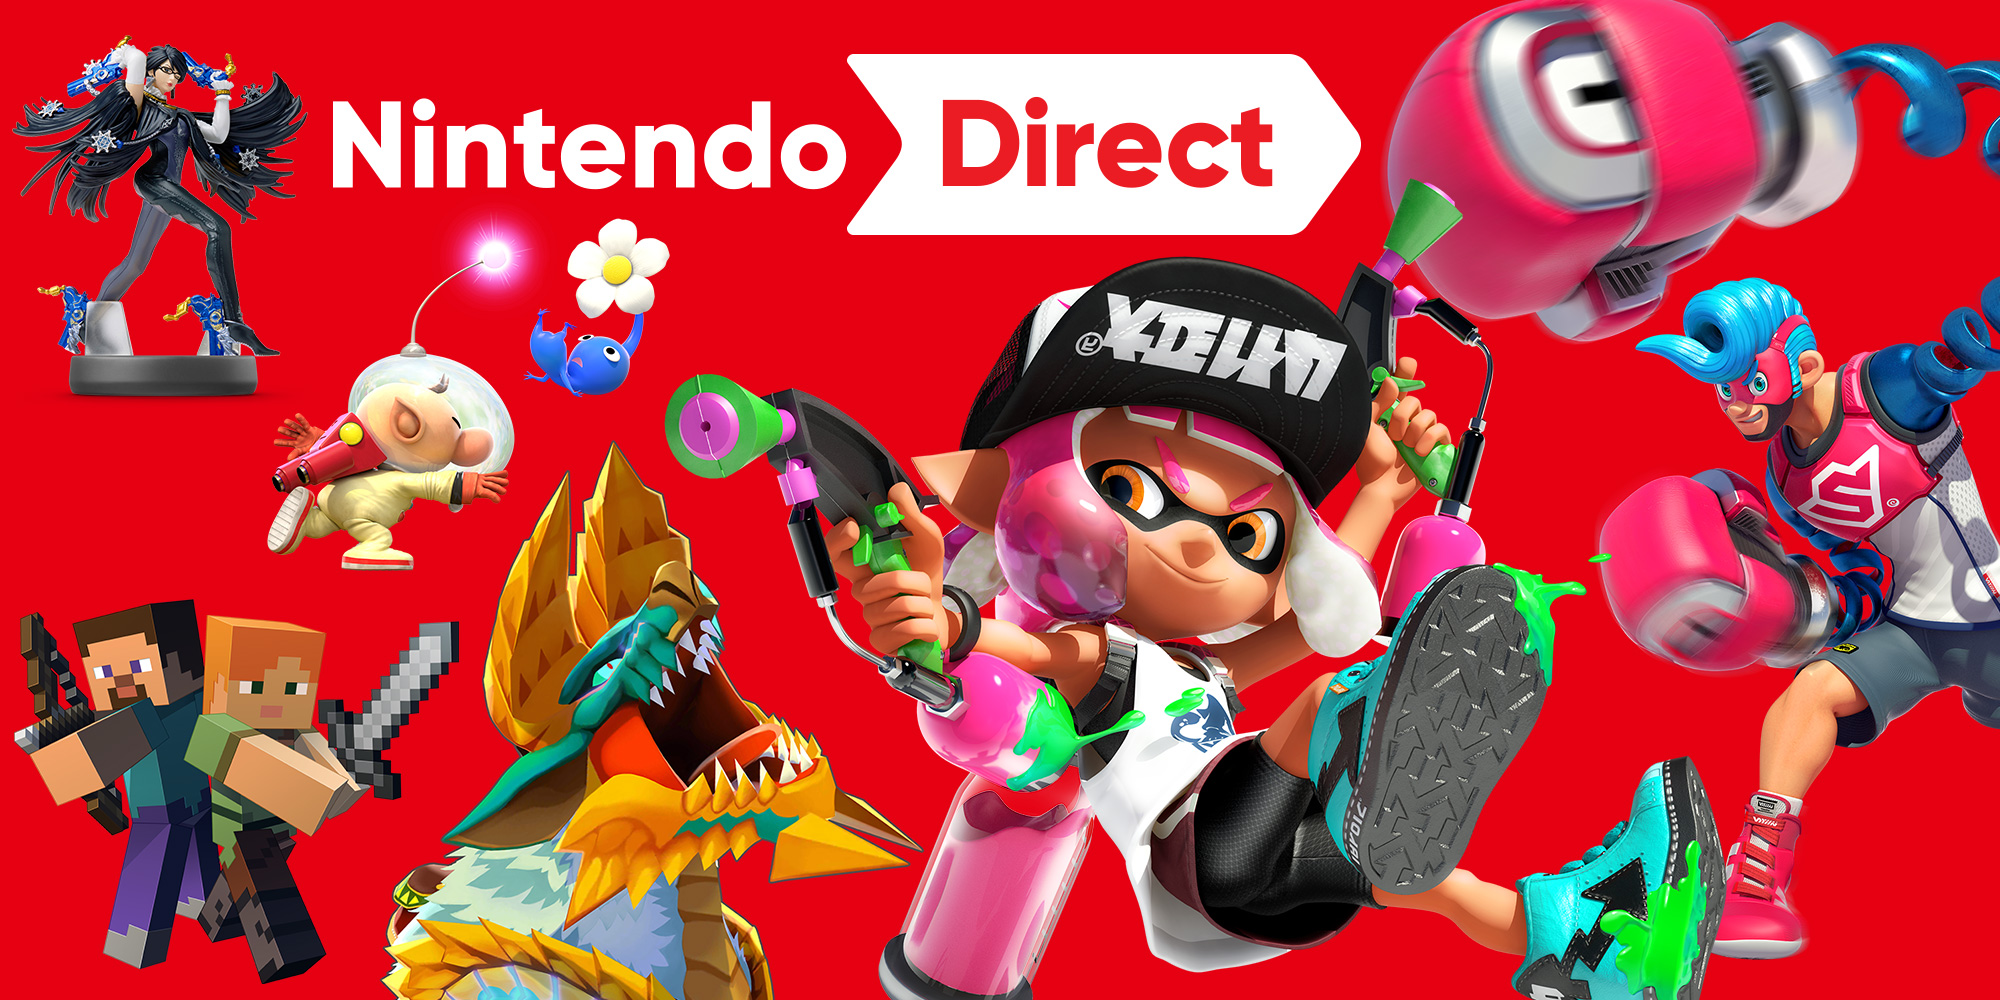 Nintendo Direct traz novidades para a Nintendo Switch e a Nintendo 3DS